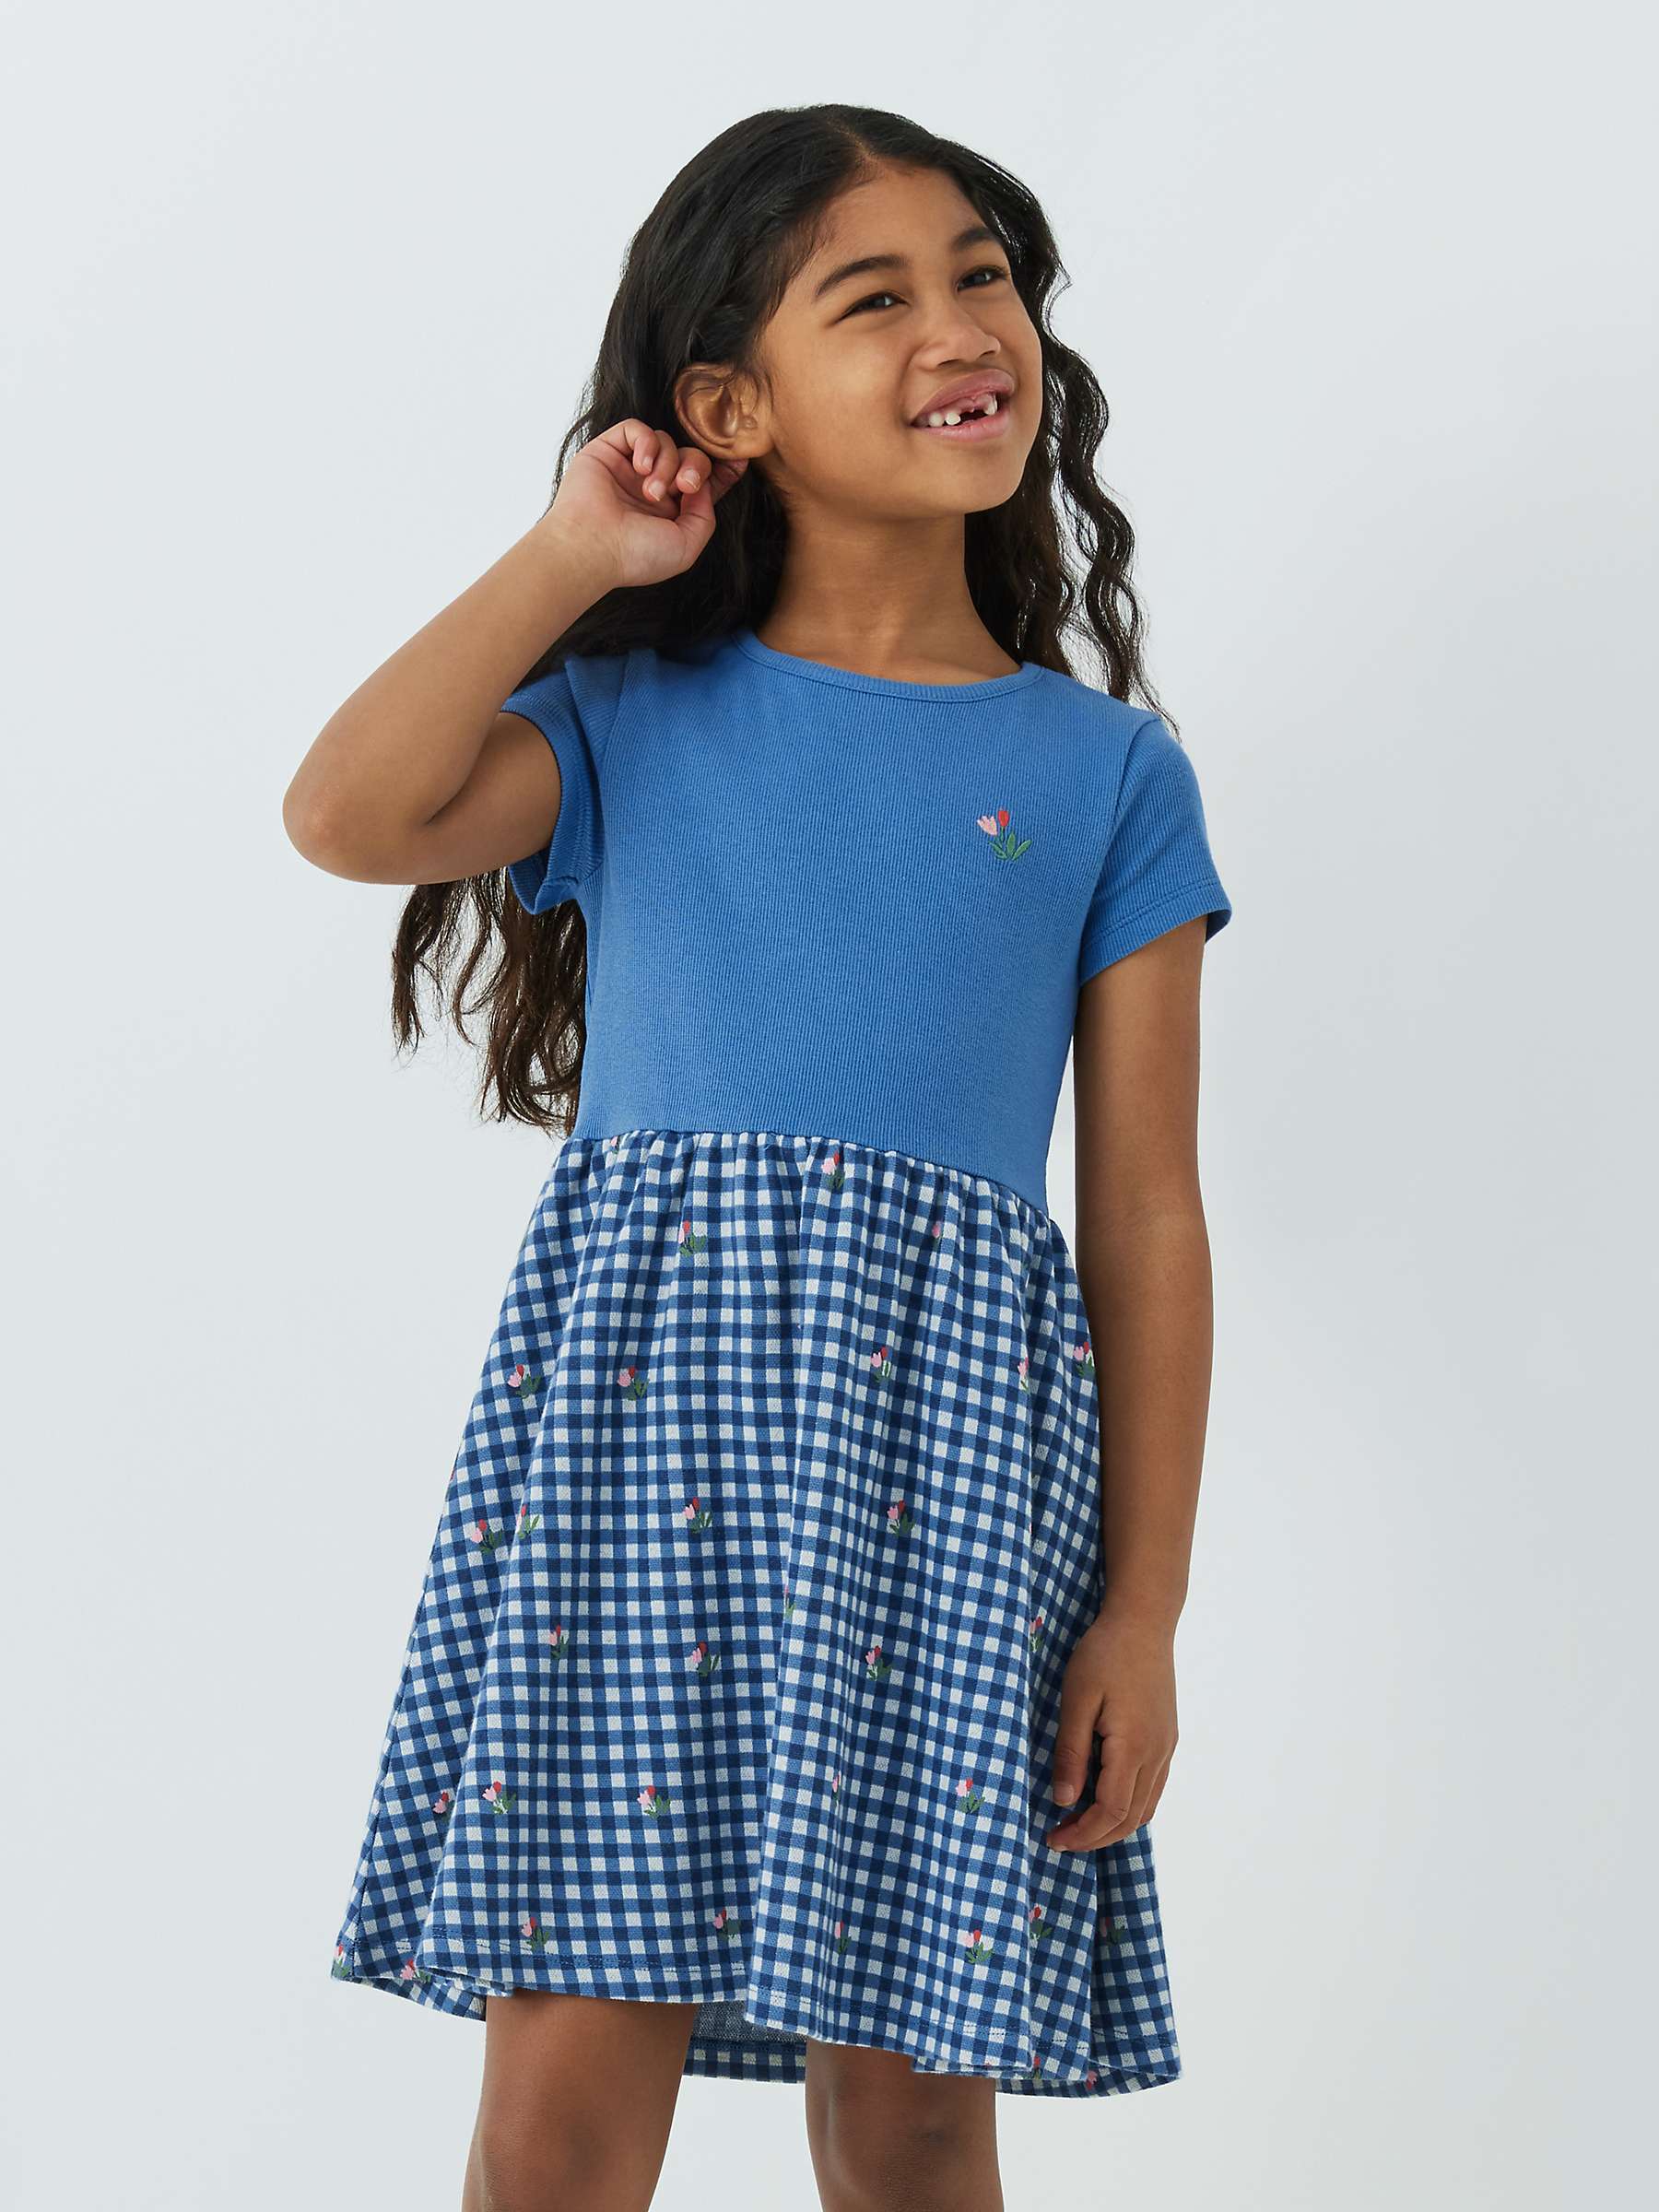 Buy John Lewis Kids' Half Check Floral Dress, Blue Online at johnlewis.com